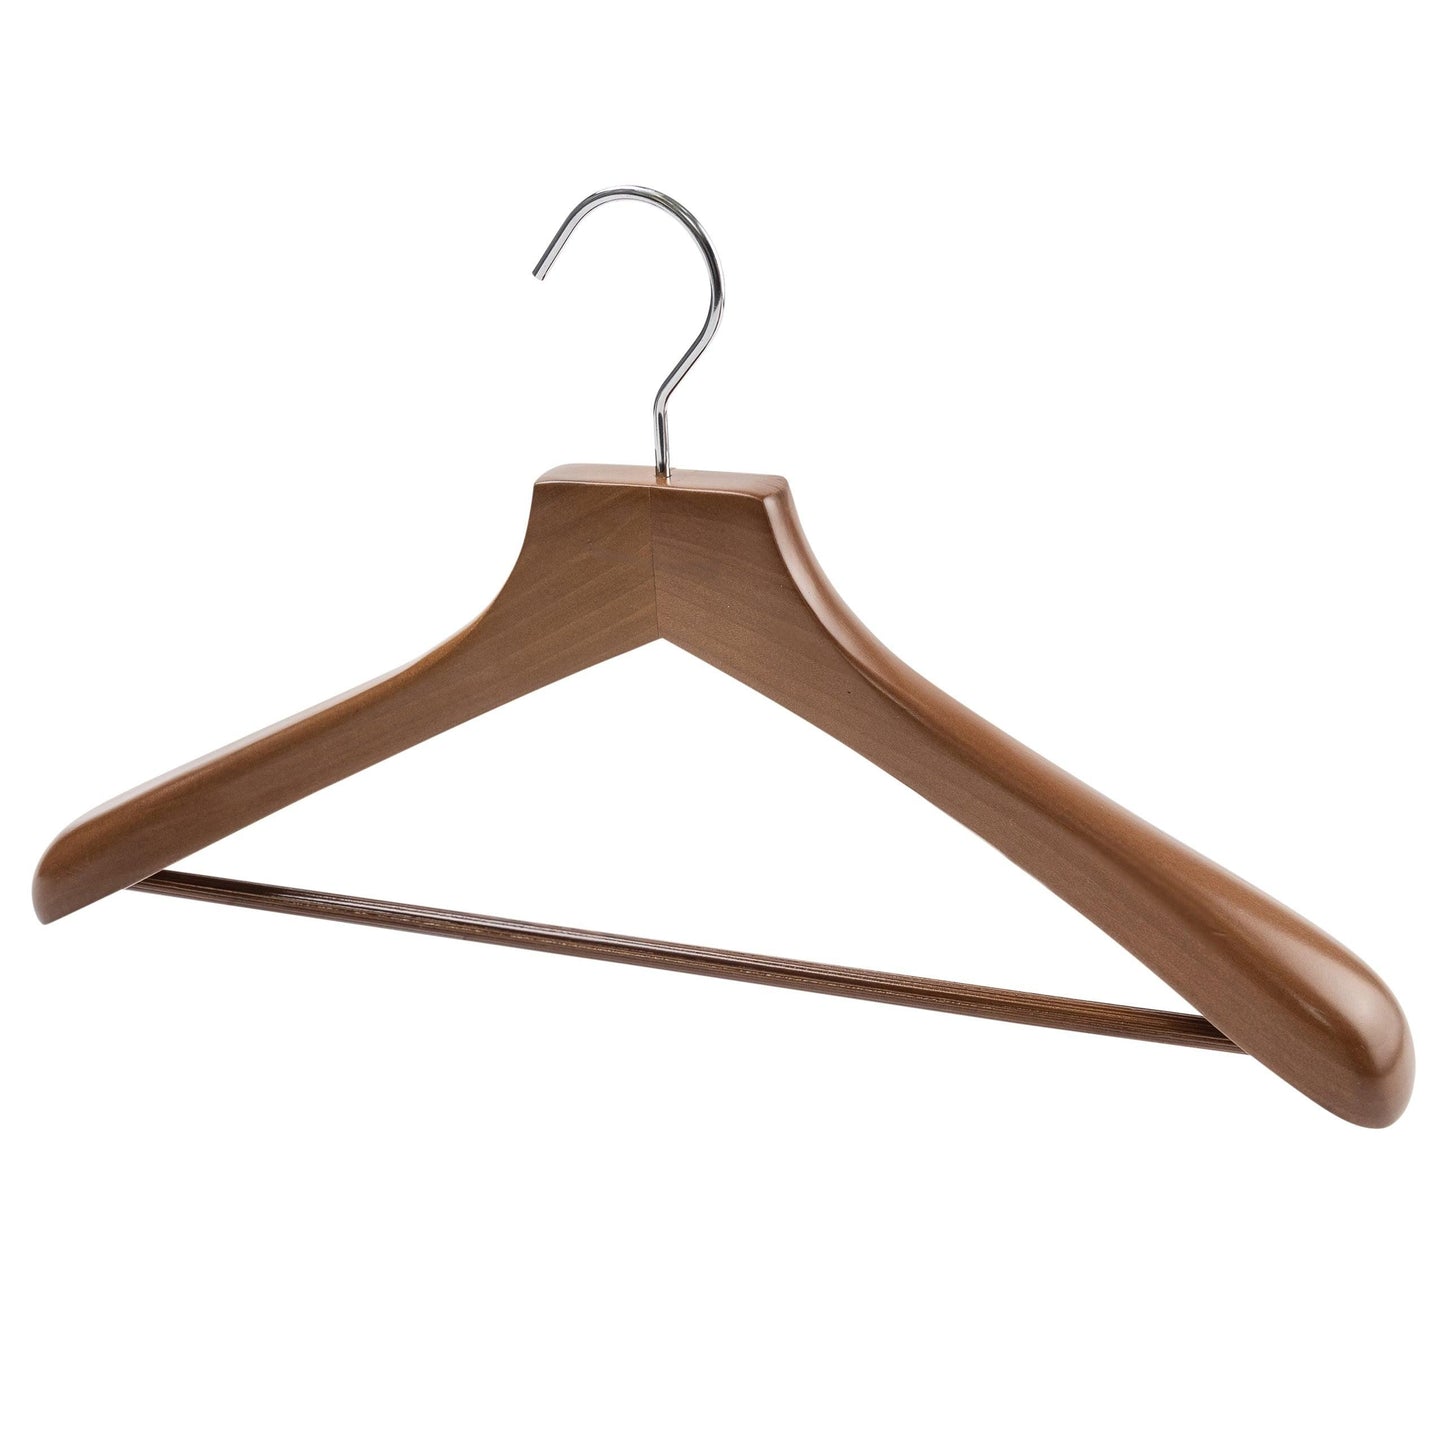 Deluxe Walnut Wooden Coat Hanger w/Non-Slip Bar - 46cm X  50mm Thick (Sold in 5/10/20) - Hangersforless